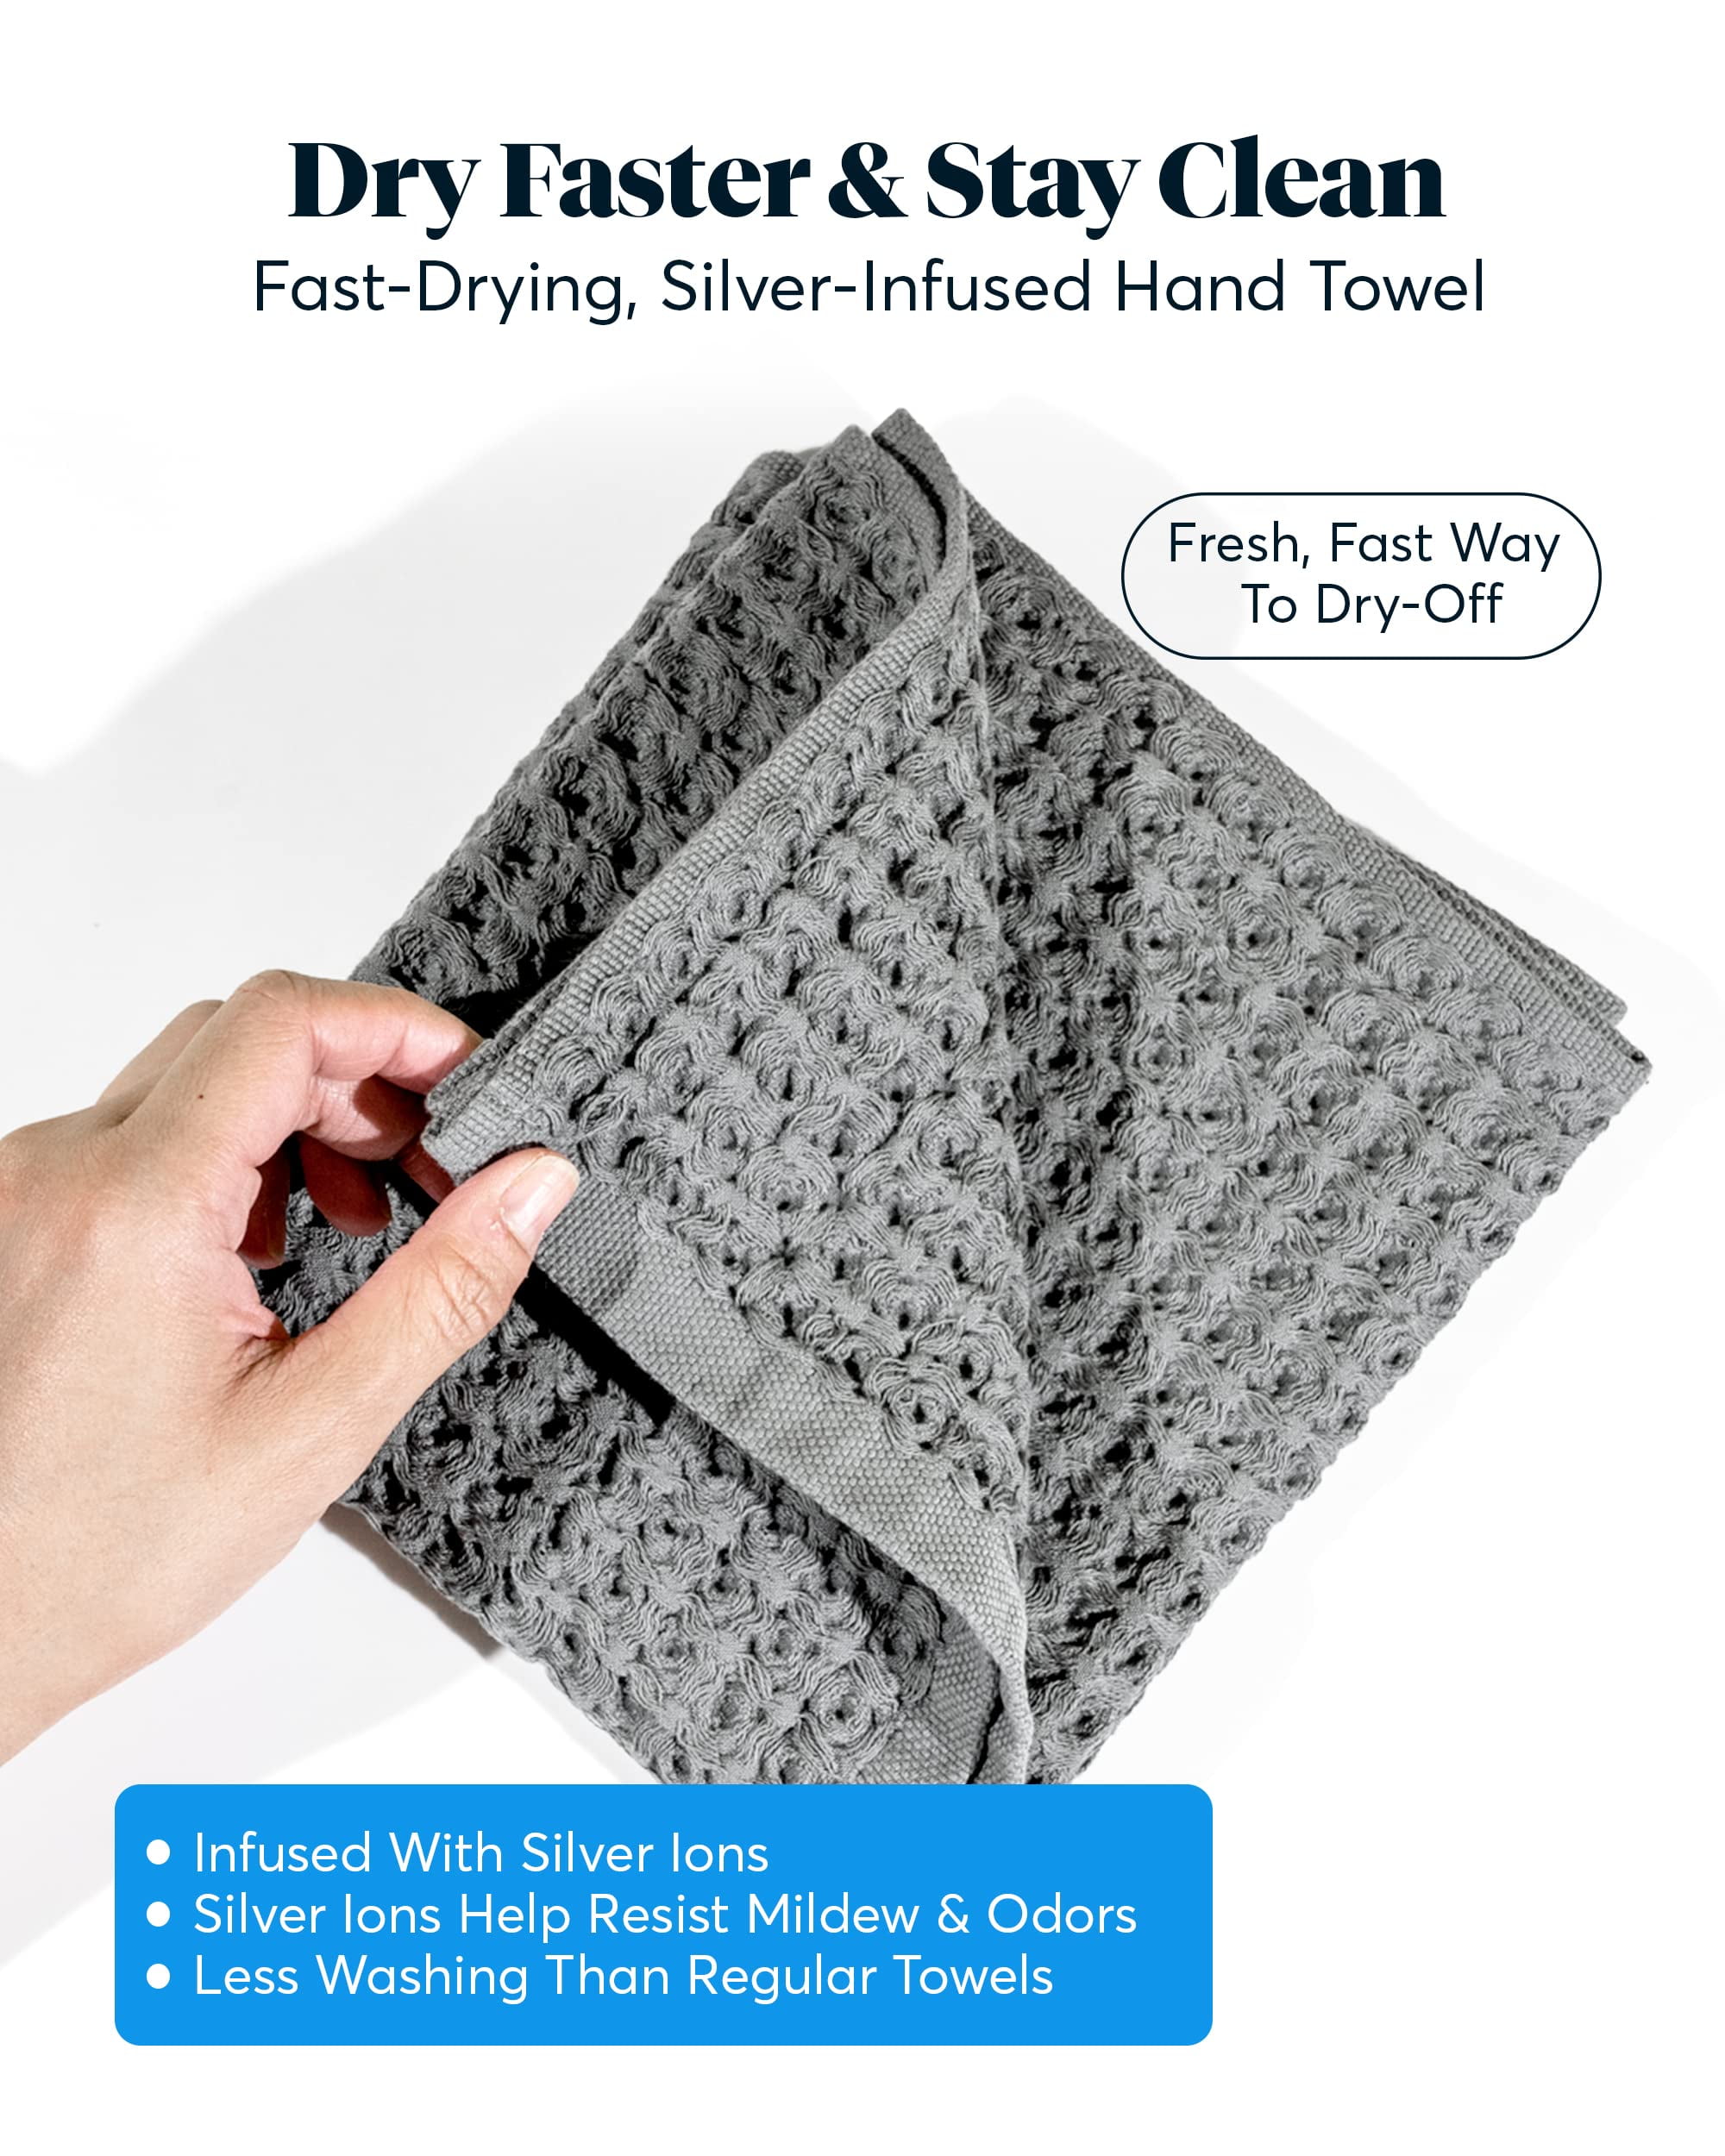 Silverthread Bath Towels - Grey – Sutera